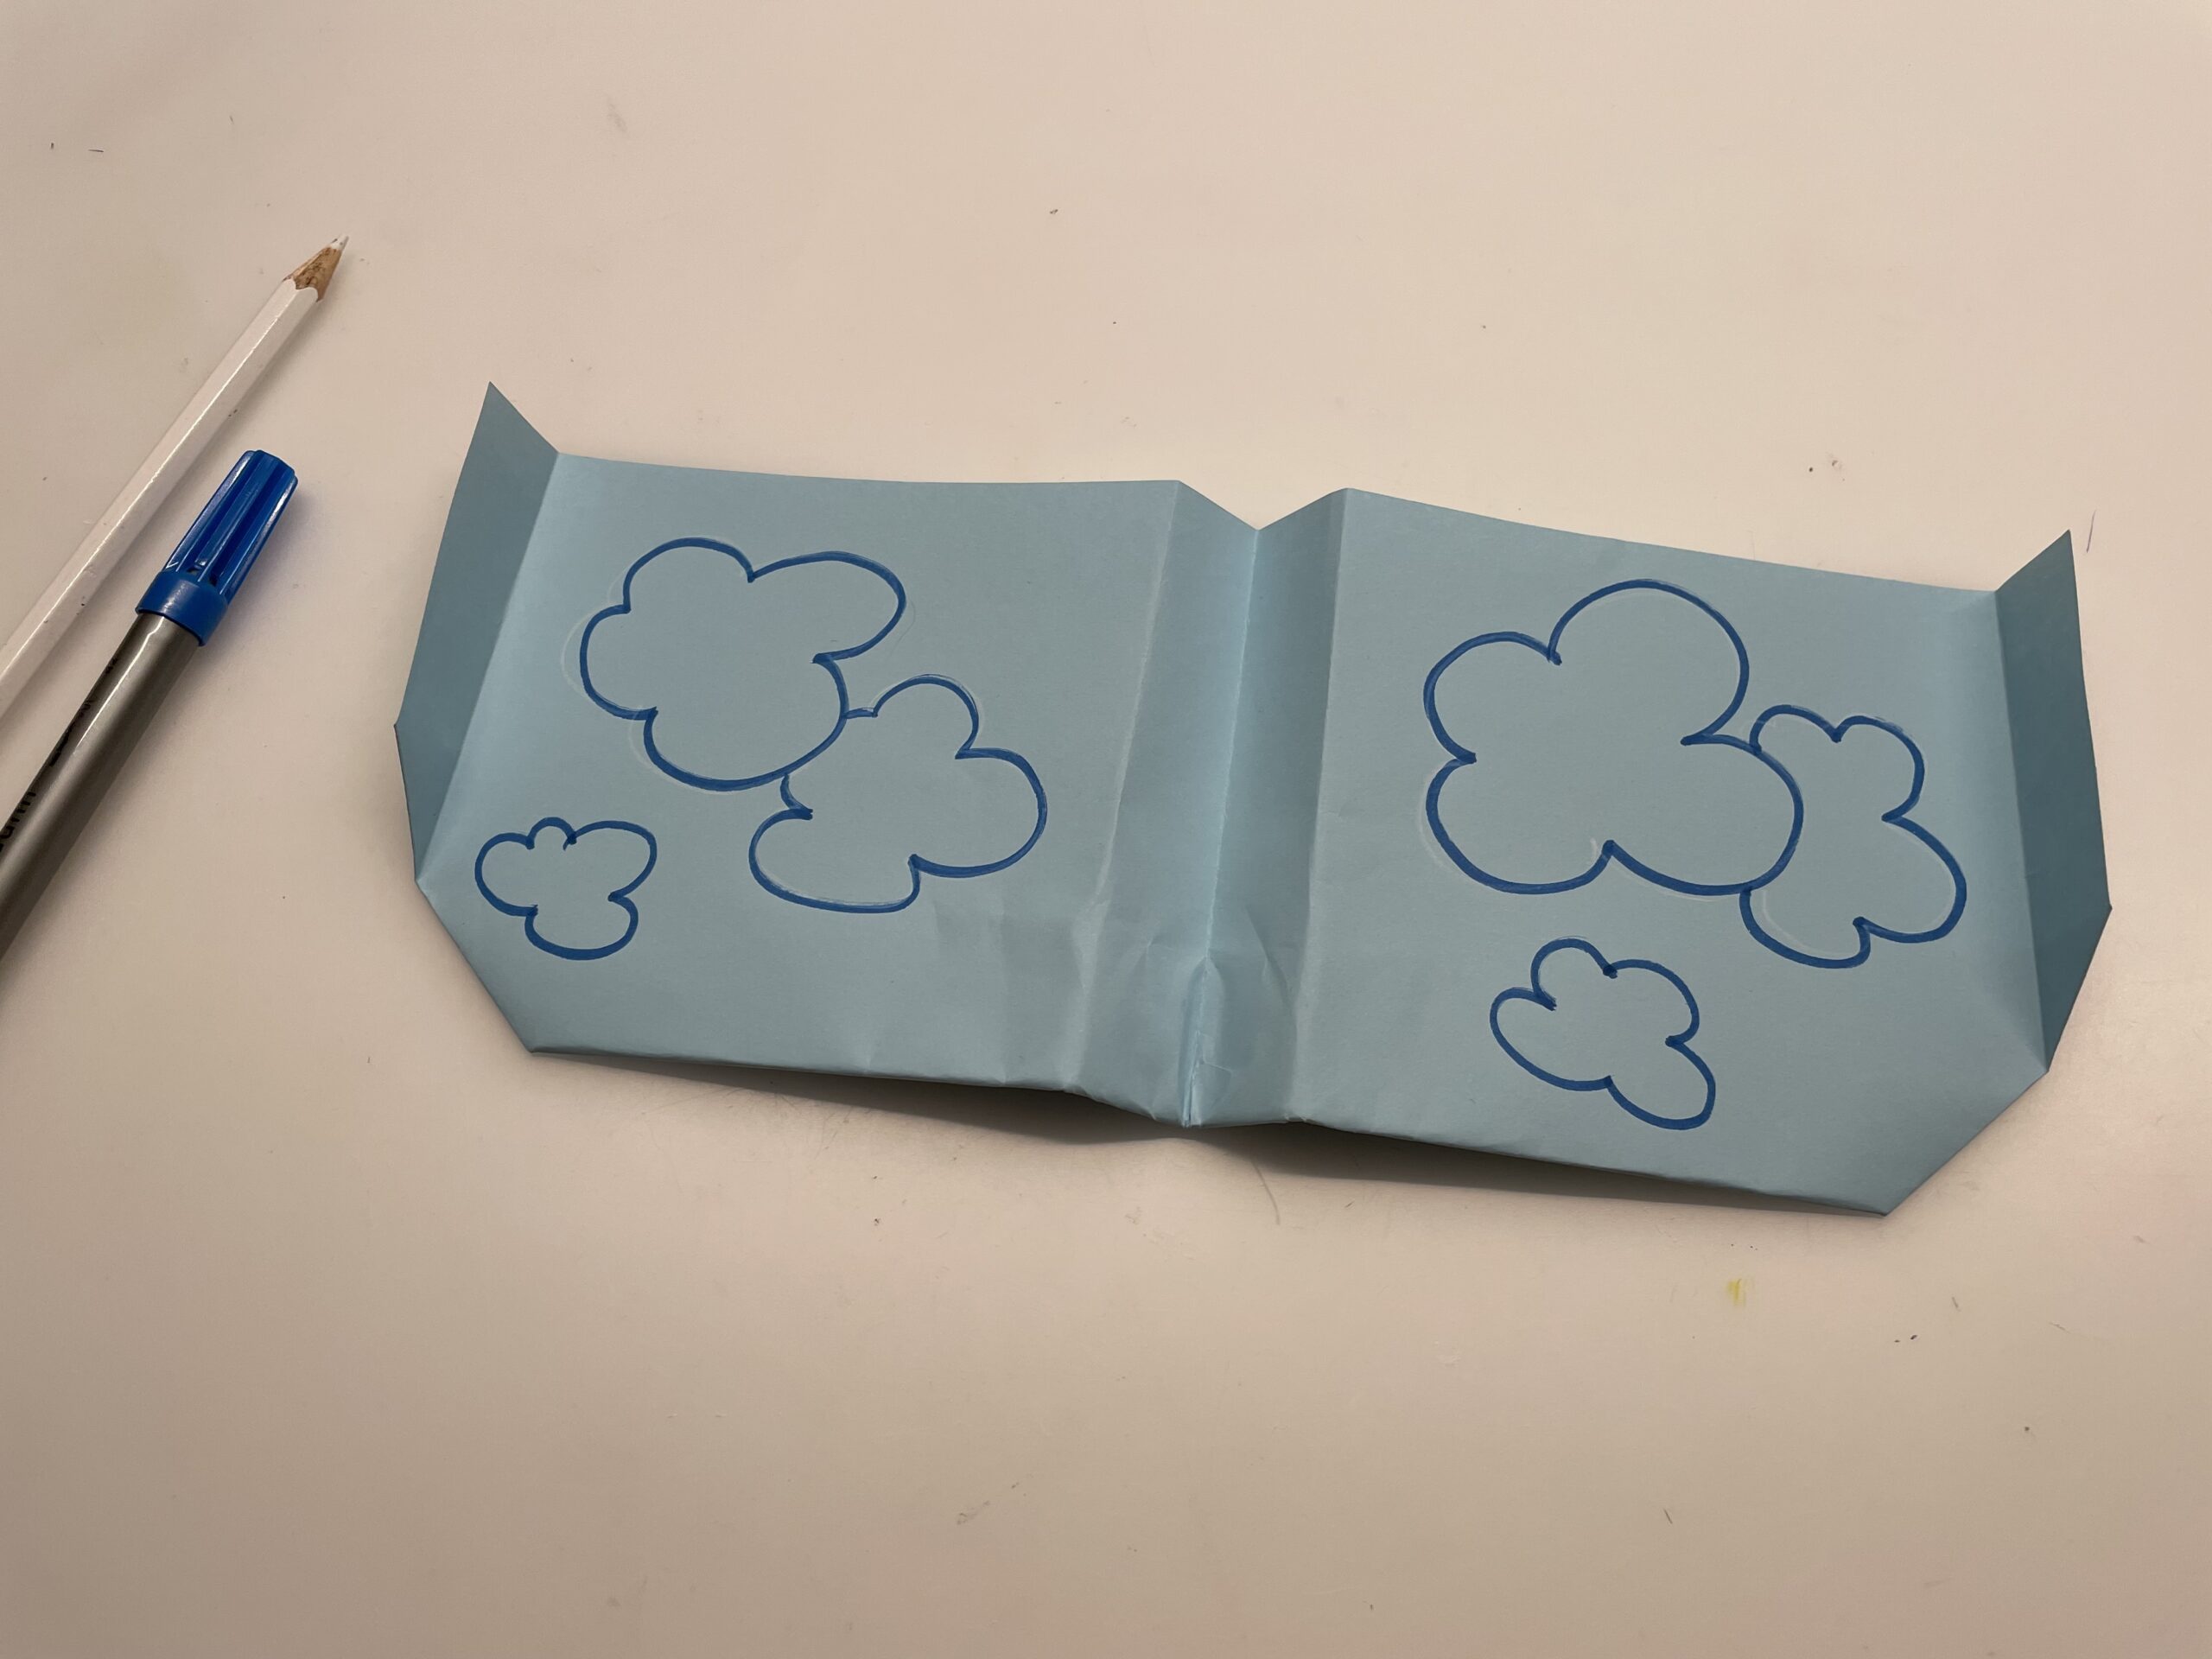 Bild zum Schritt 50 für das Bastel- und DIY-Abenteuer für Kinder: 'Malt Wolken auf die großen Tragflächen. Z.B. malt ihr mit...'